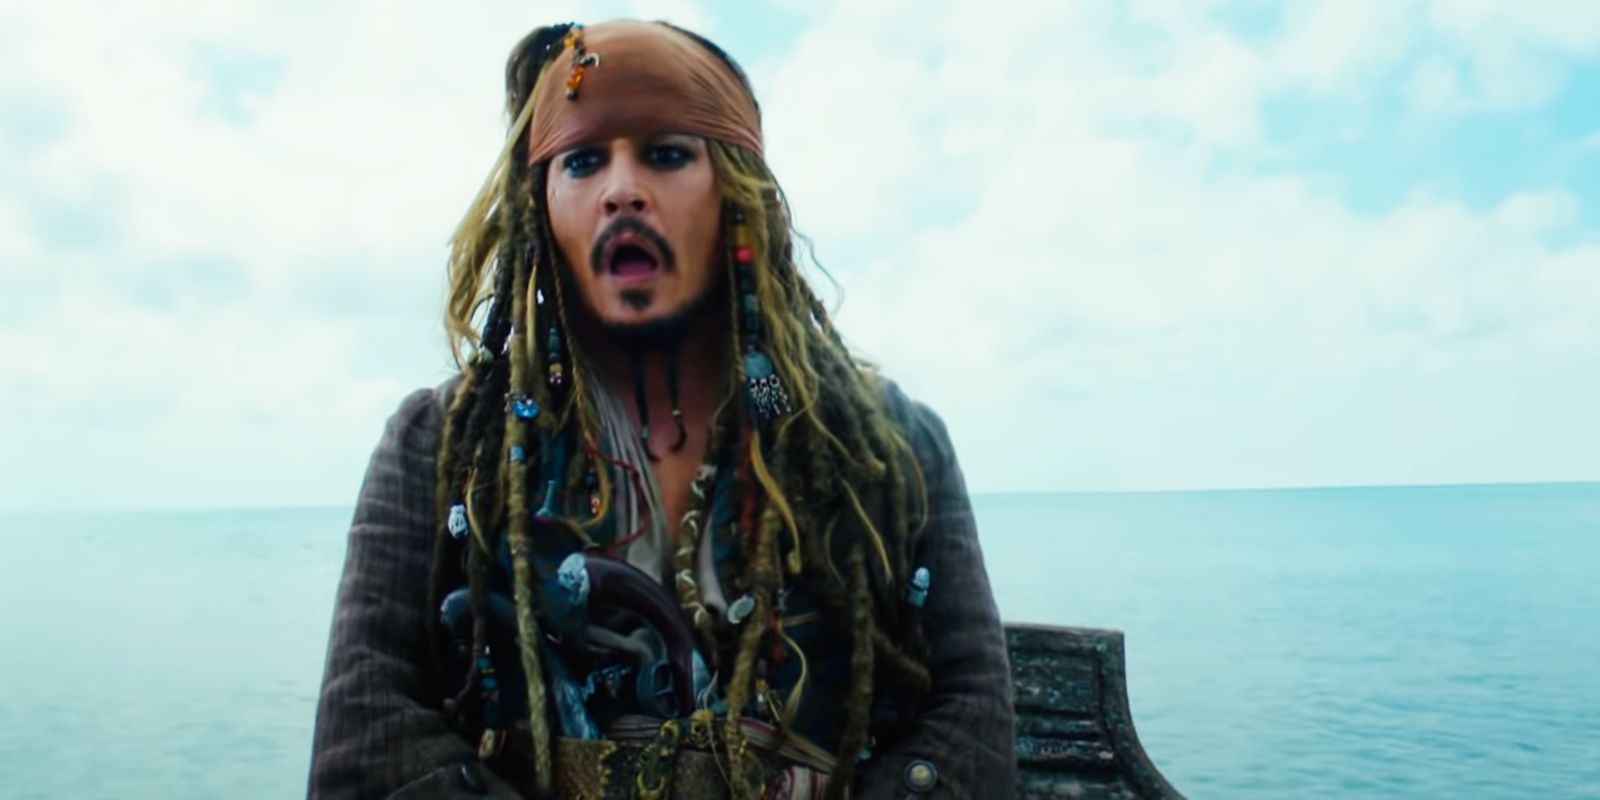 La actualización de Piratas del Caribe 6 sin Johnny Depp provoca una reacción violenta